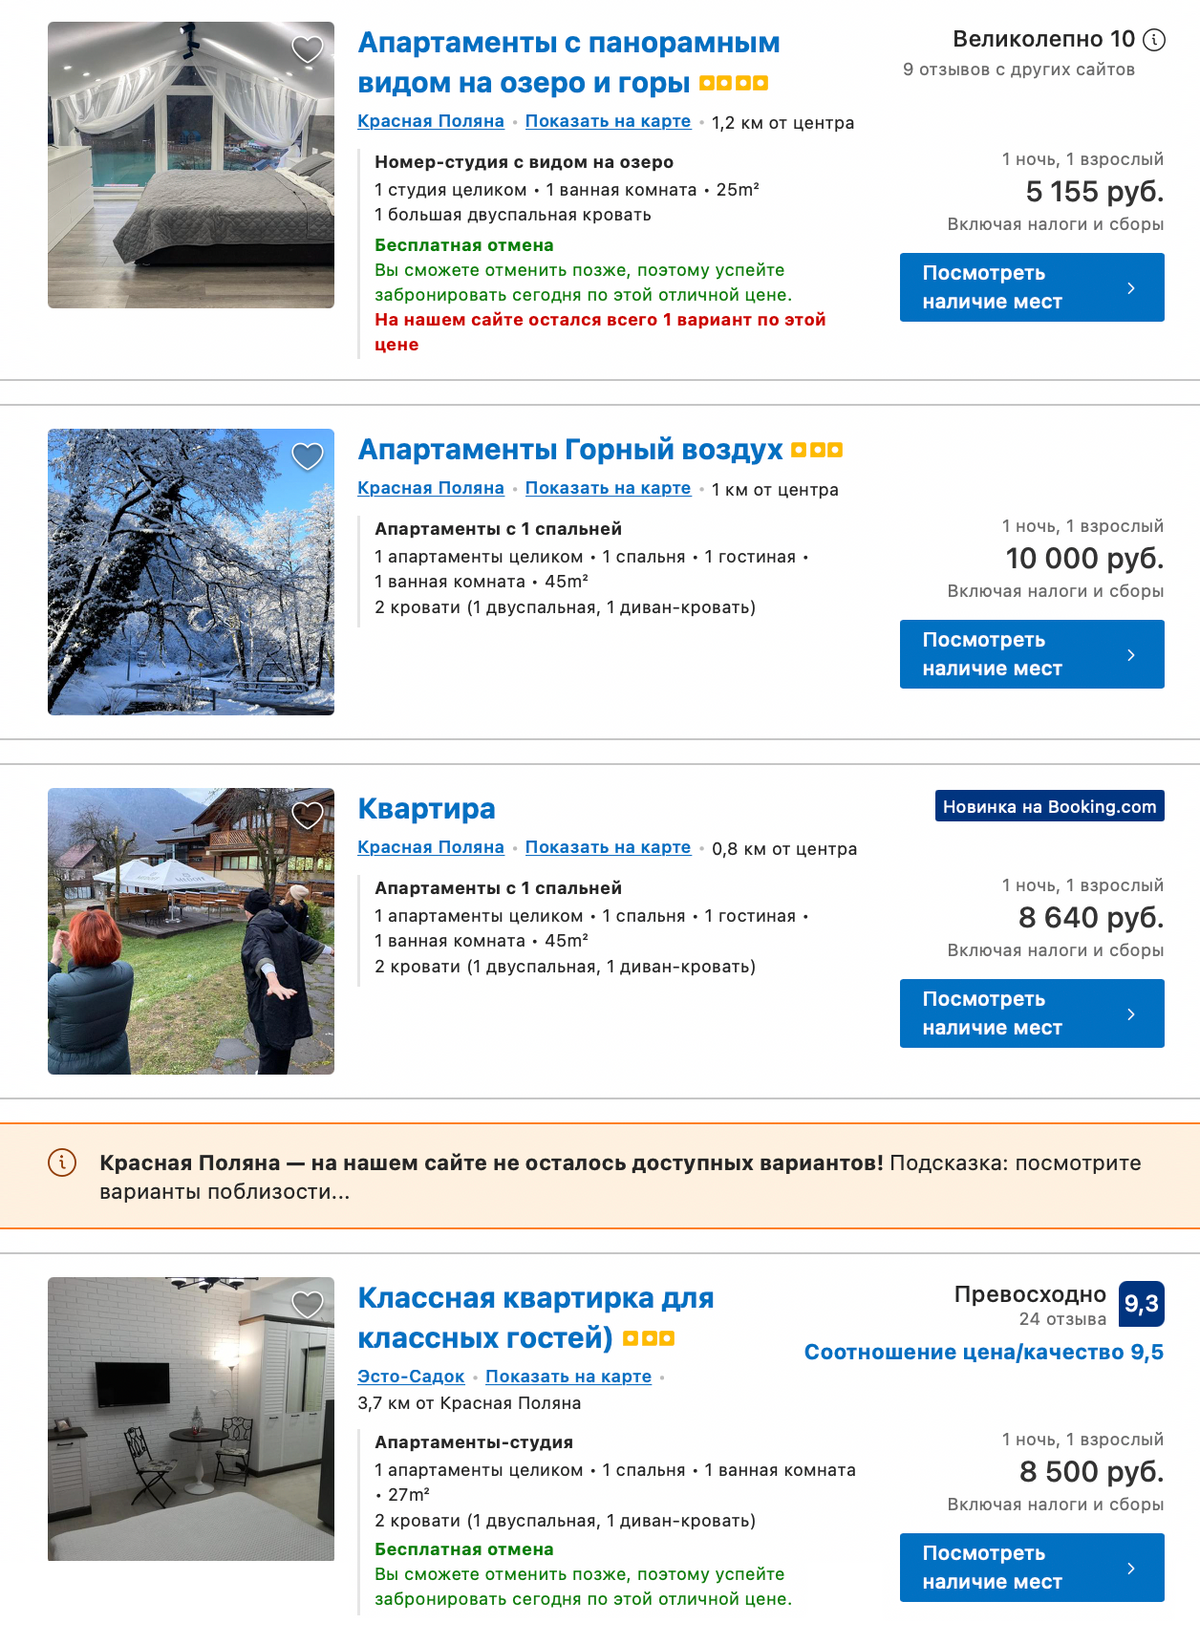 Цены на аренду квартир и апартаментов в Красной Поляне в феврале 2022&nbsp;года